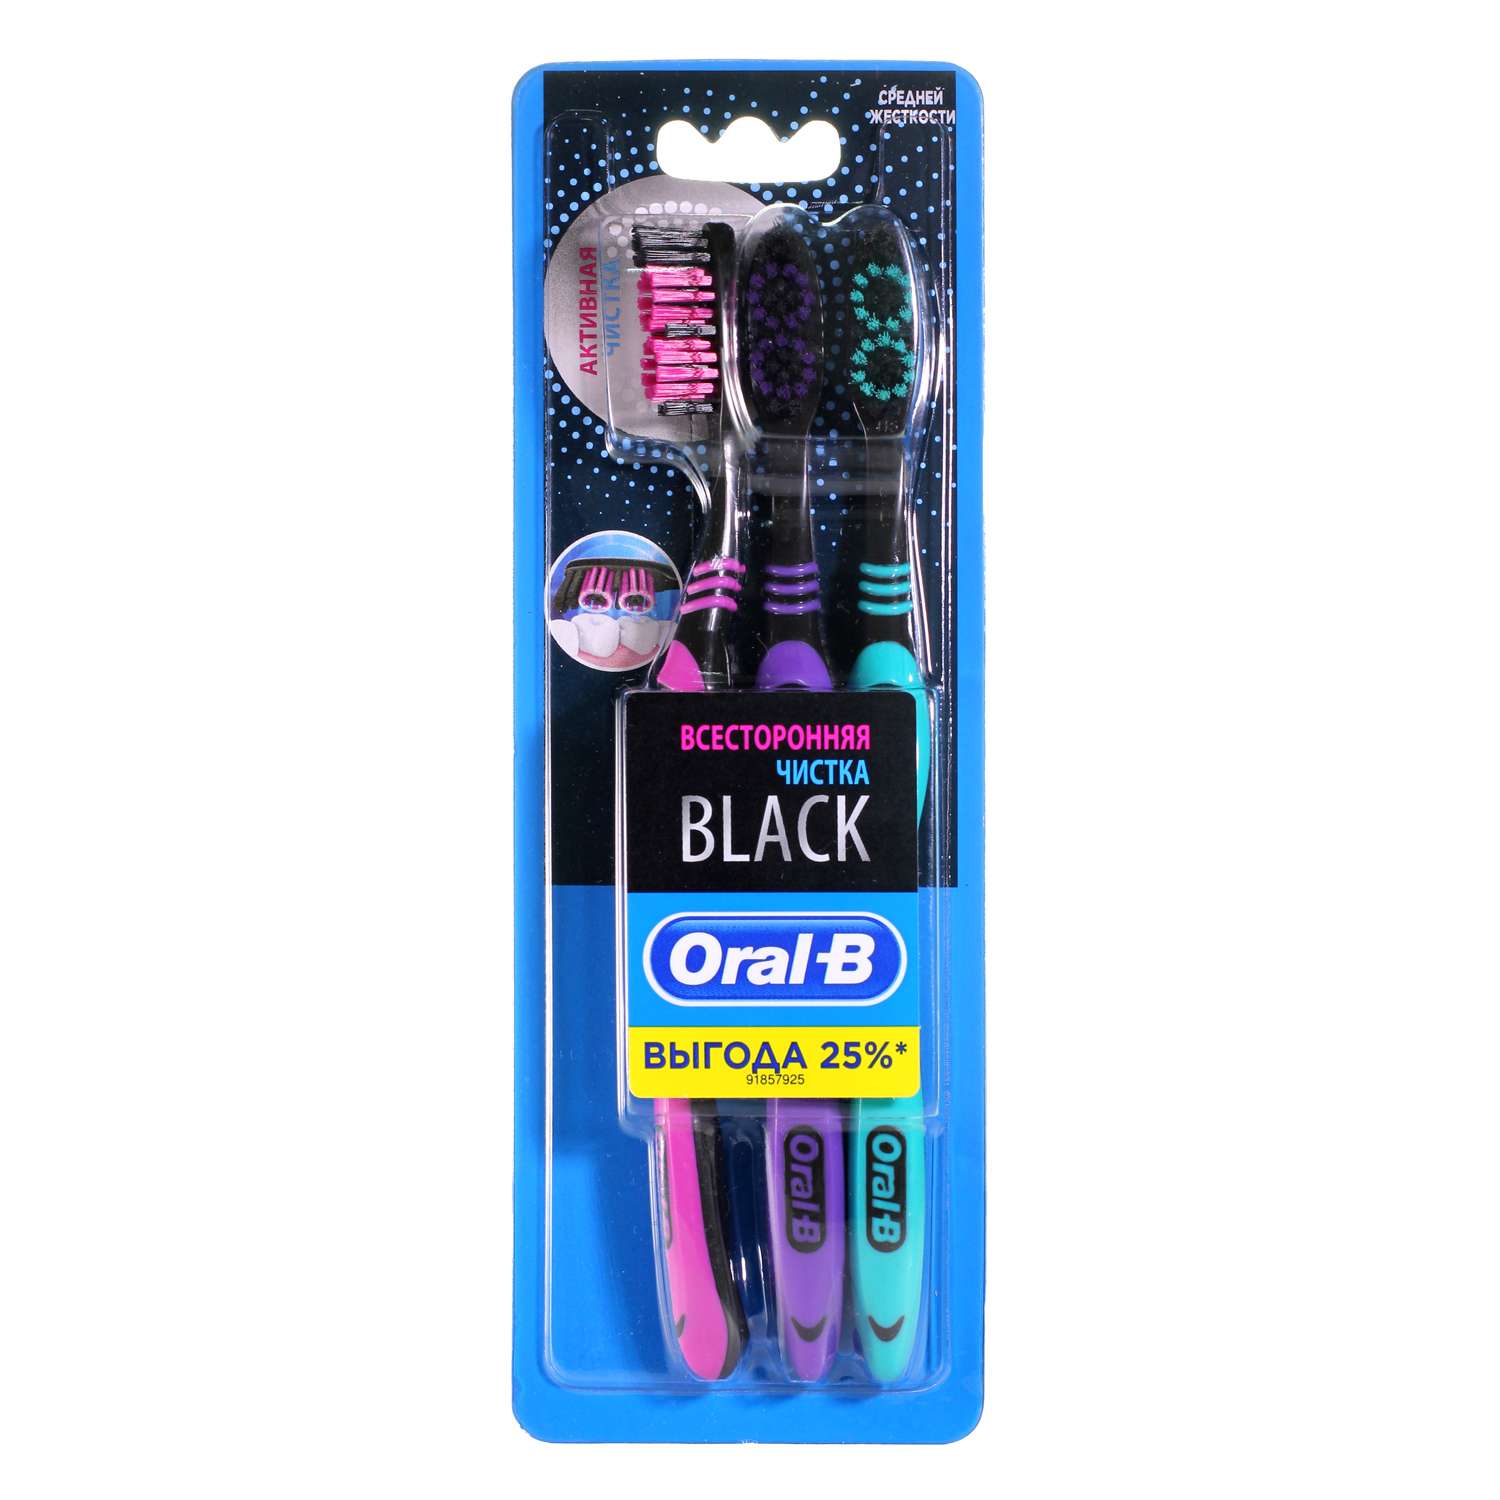 Зубная щетка Oral-B Black 40 Medium всесторонняя чистка 81703880 - фото 2